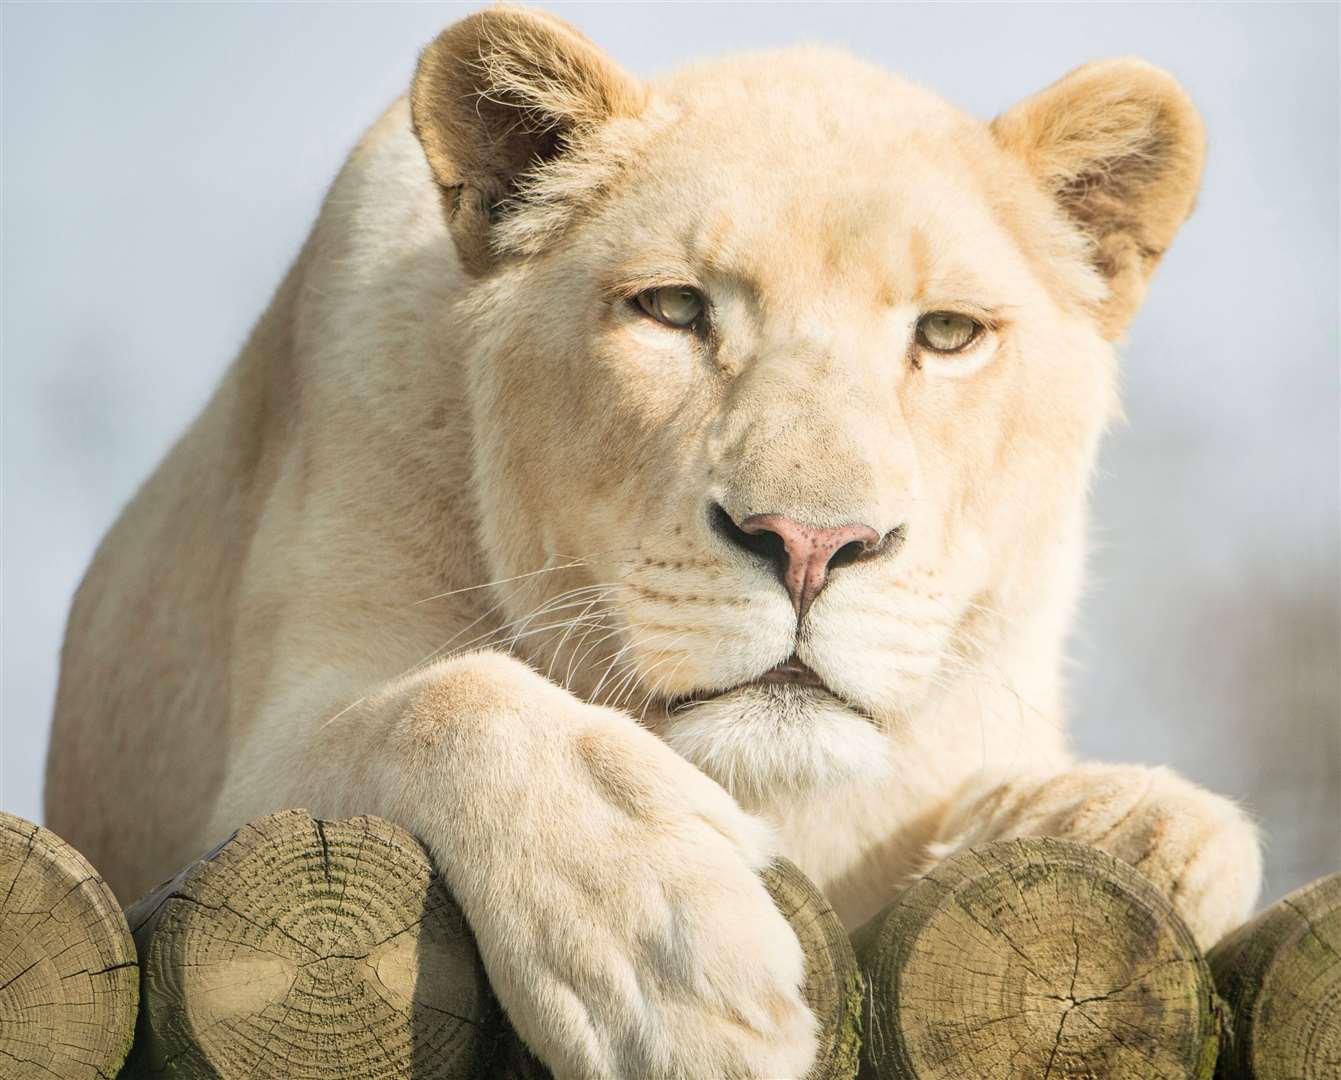 The Big Cat Sanctuary's white lioness Imara has died aged 11. Picture: The Big Cat Sanctuary